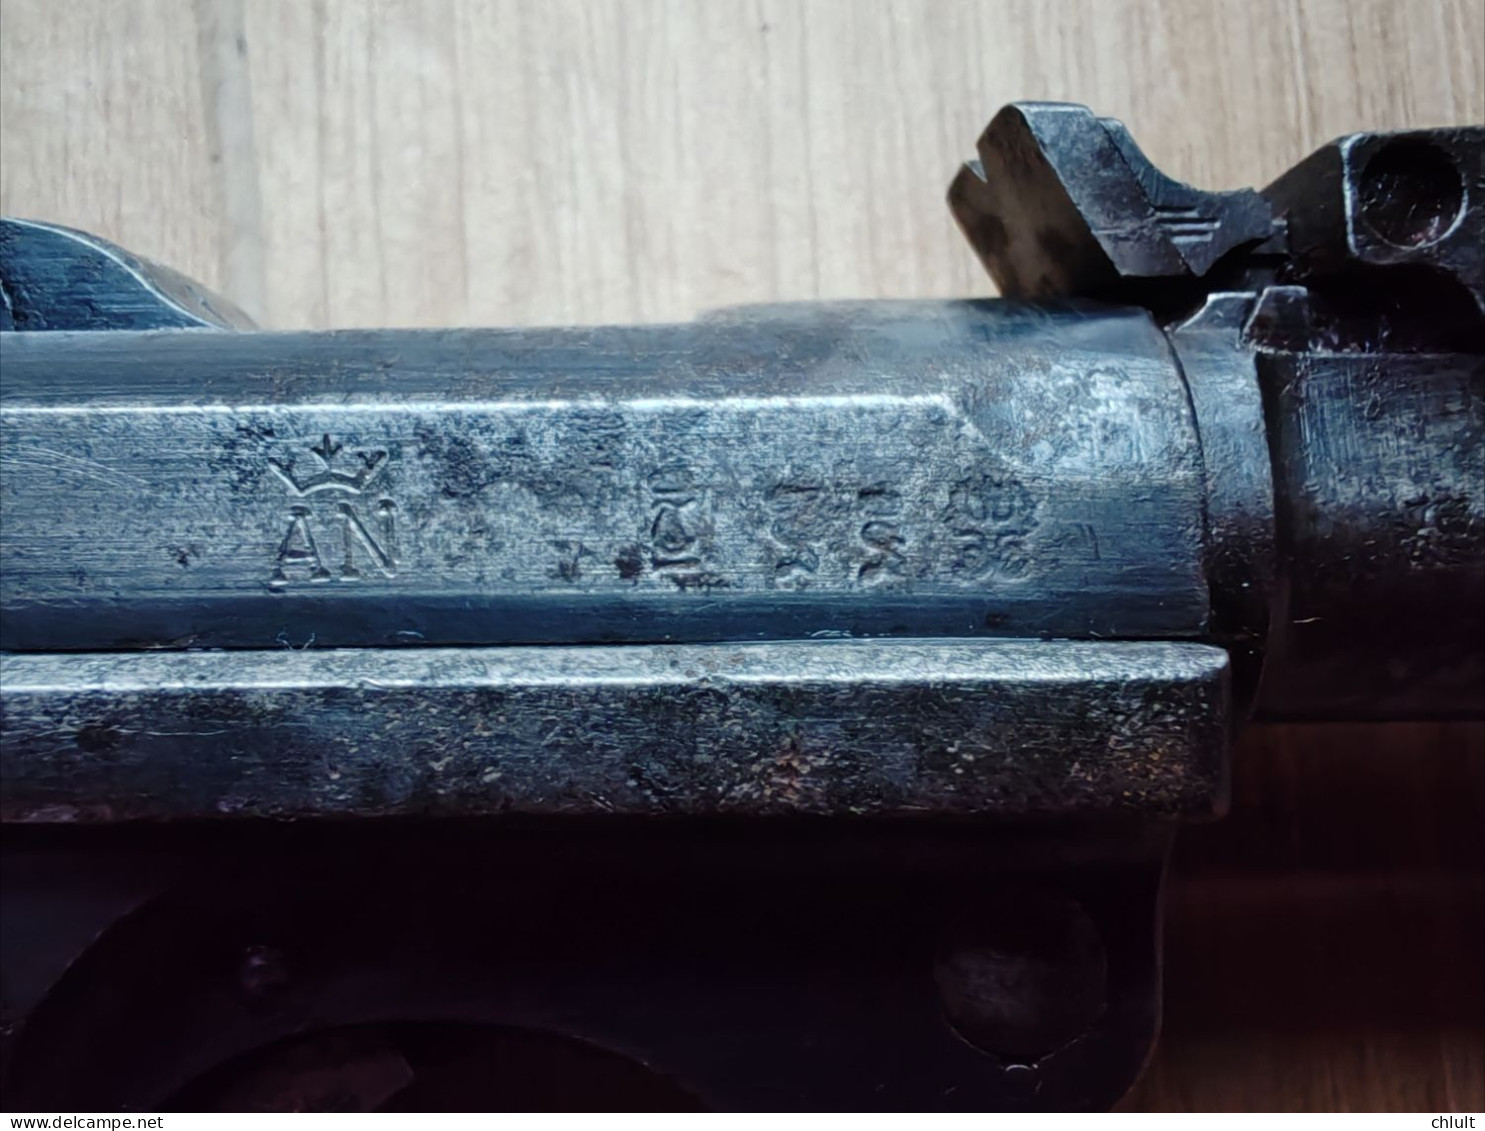 Rare Pistolet P08 Artillerie Allemand 1917 DWM Monomatricule Neutralisé! - Decorative Weapons